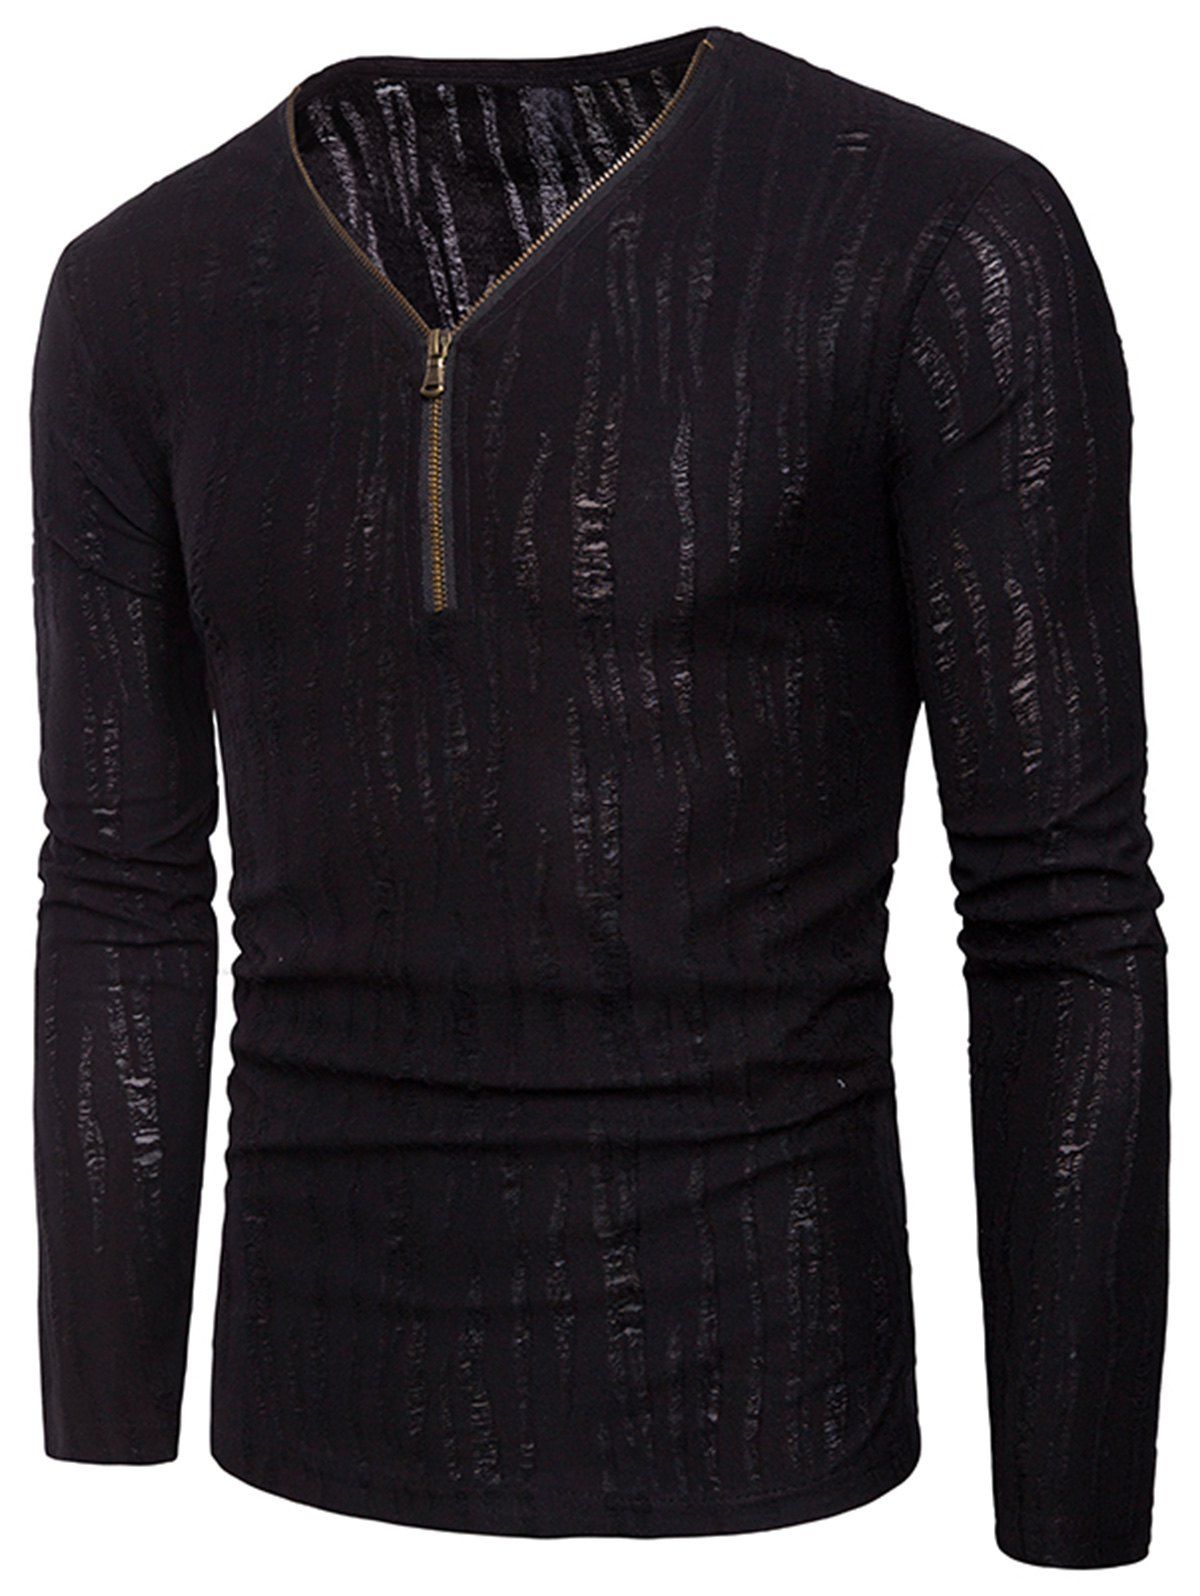 [28% OFF] Zipper Design Long Sleeve Distressed T-Shirt | Rosegal